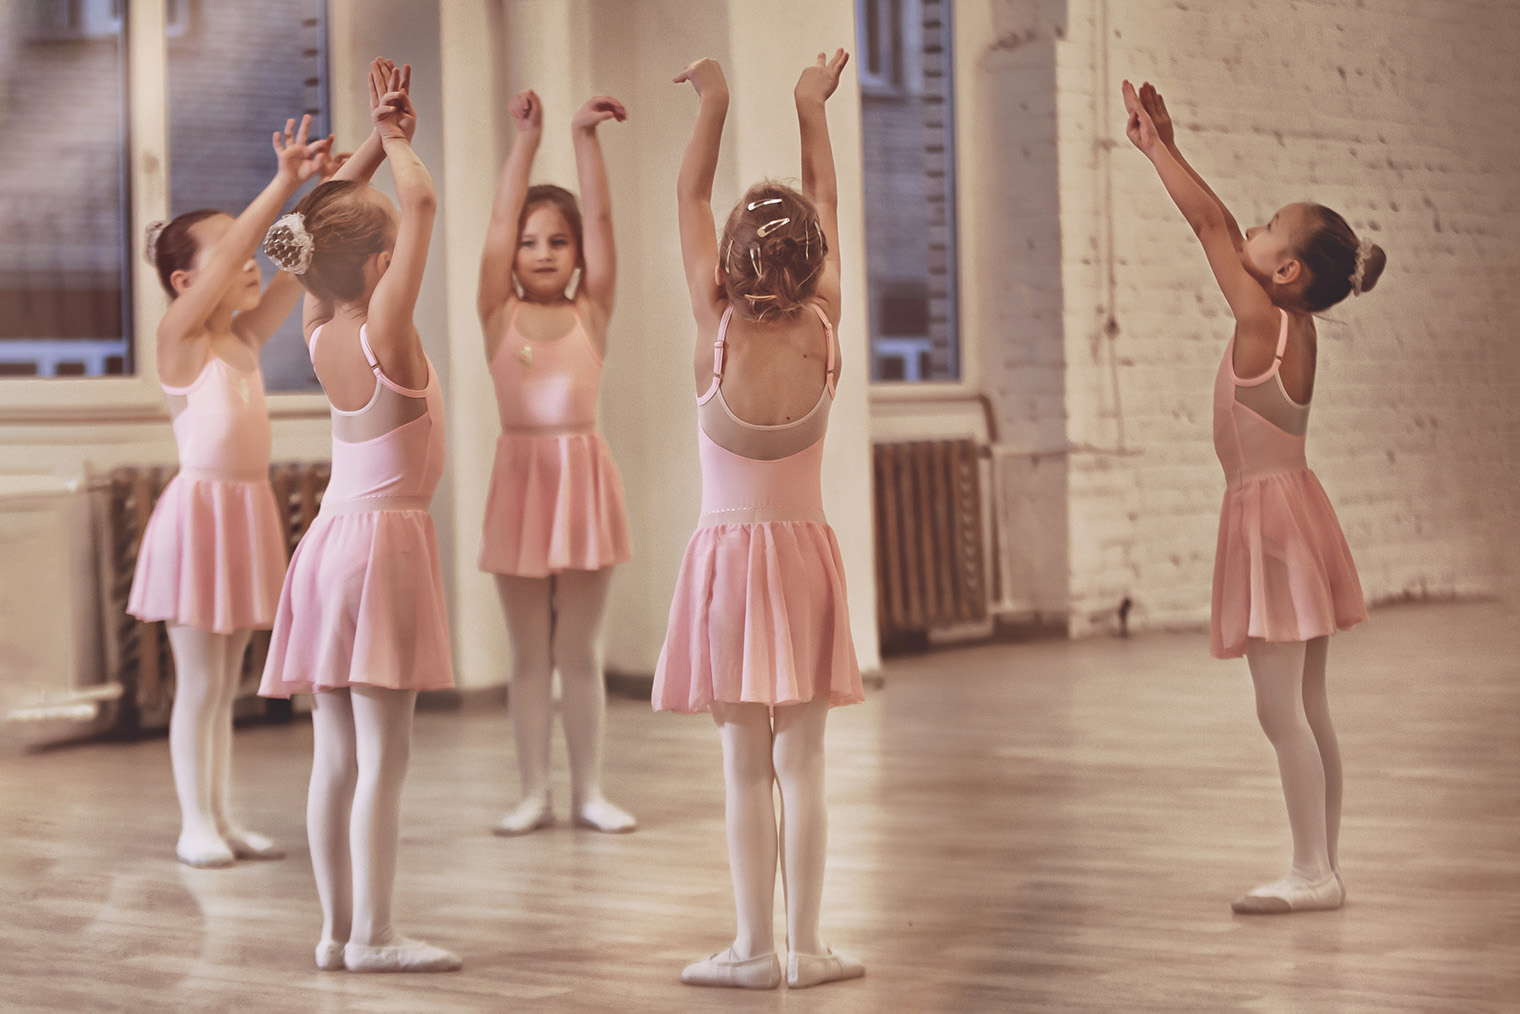 Так проходят занятия в школах франшизы «Русский балет». Источник: schoolballet.com